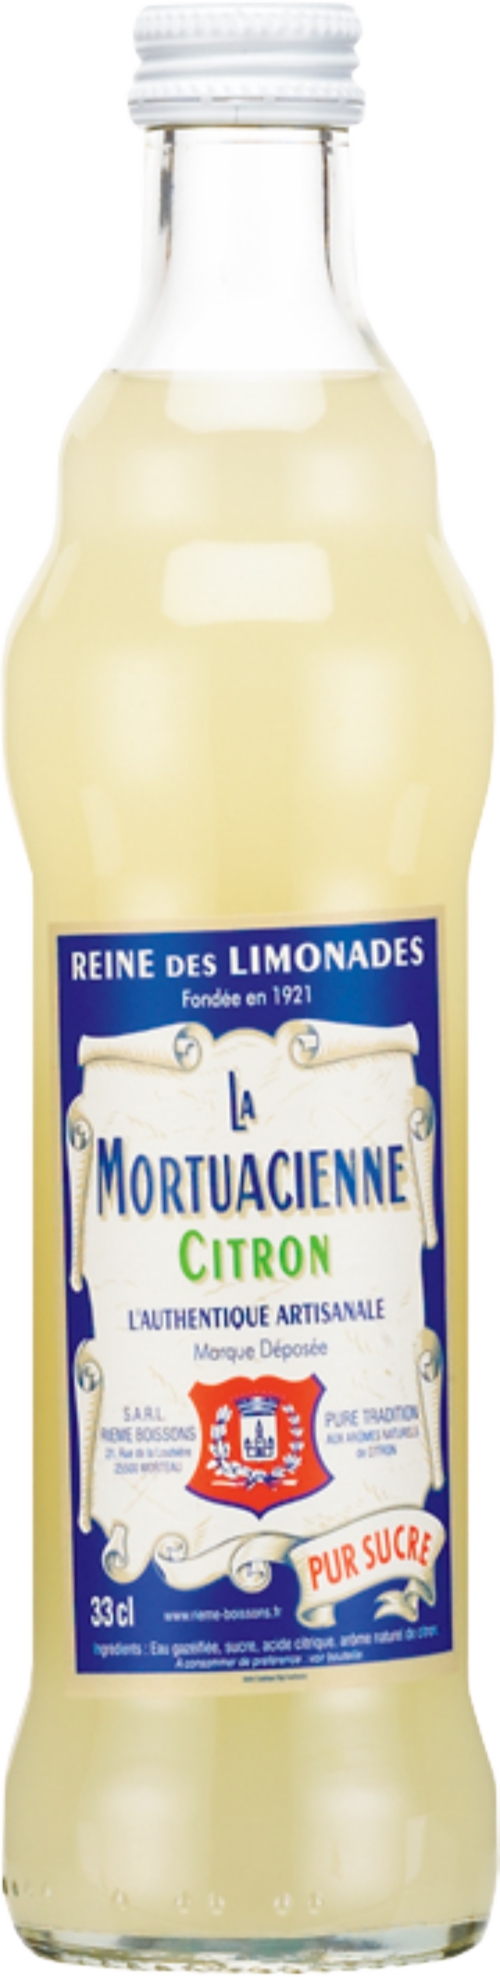 LA MORTUACIENNE Citron Lemonade 330ml